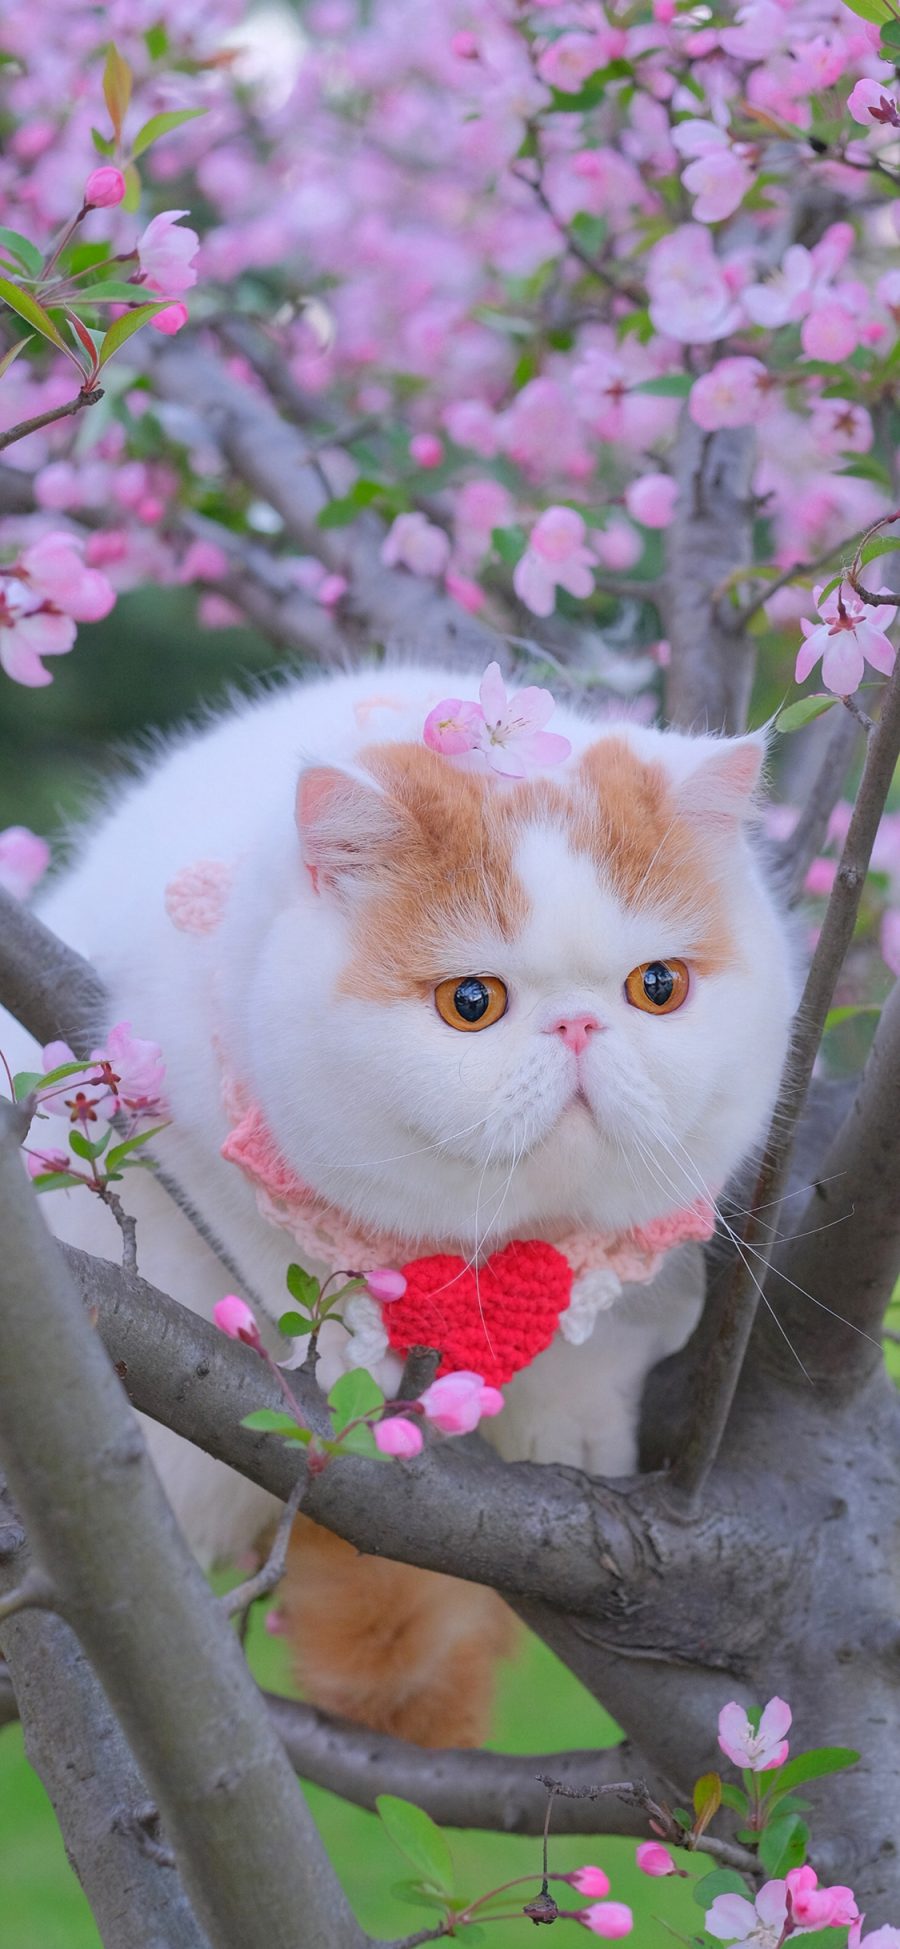 [2436×1125]三宝猪猪 猫咪 宠物 网红猫 鲜花 枝干 苹果手机壁纸图片